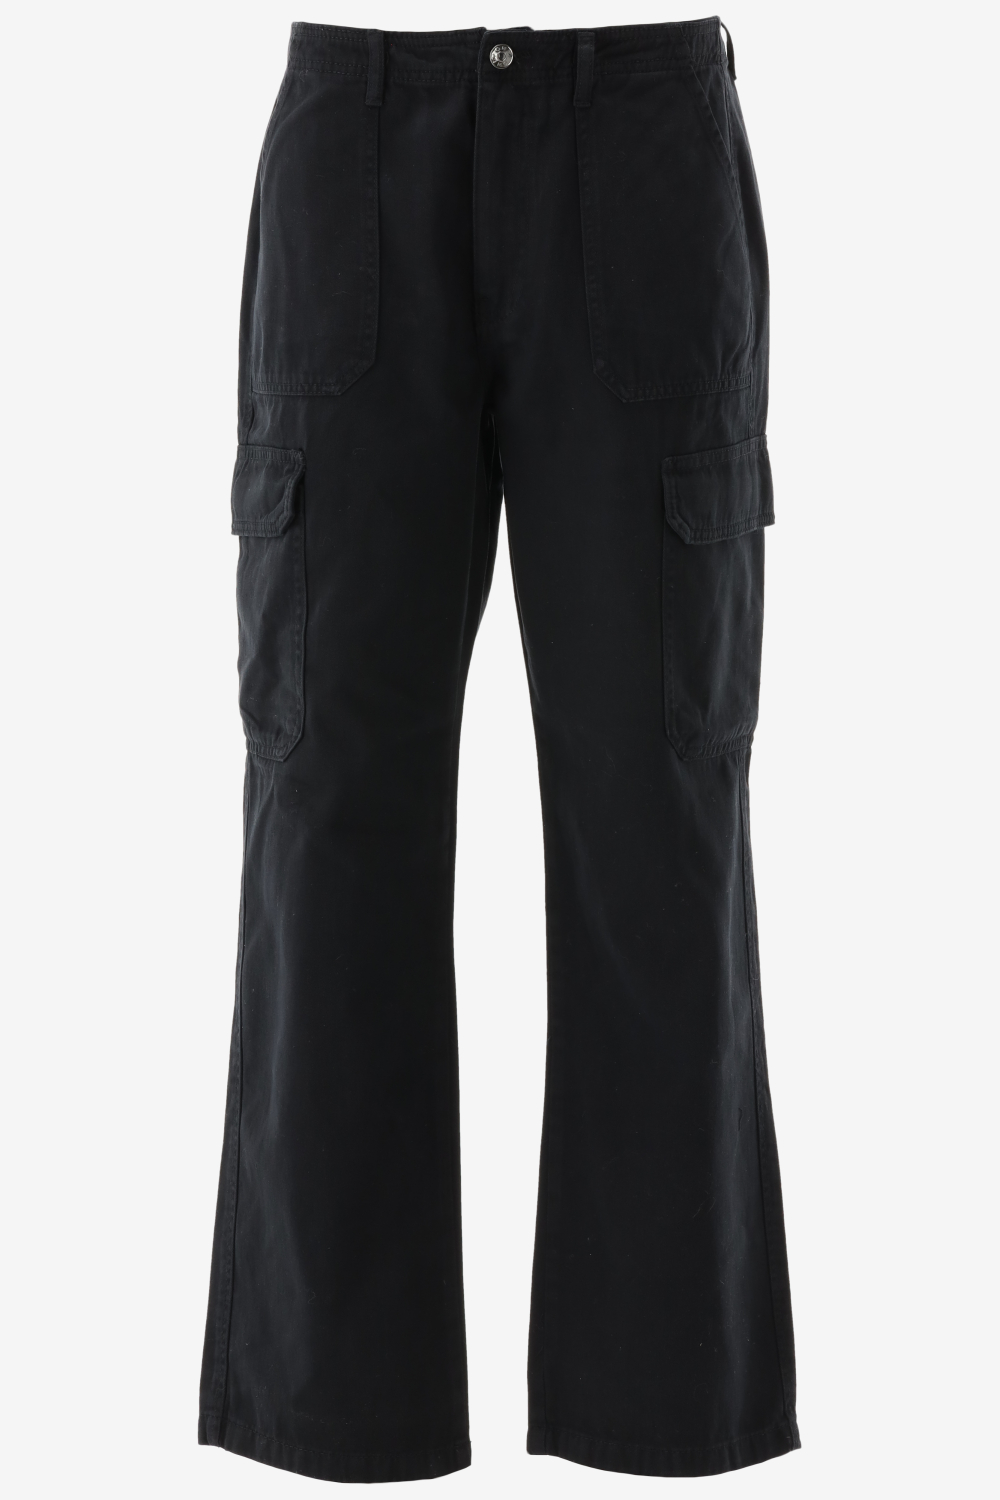 Only 15300976 - Lange broeken voor Vrouwen - Maat M/32